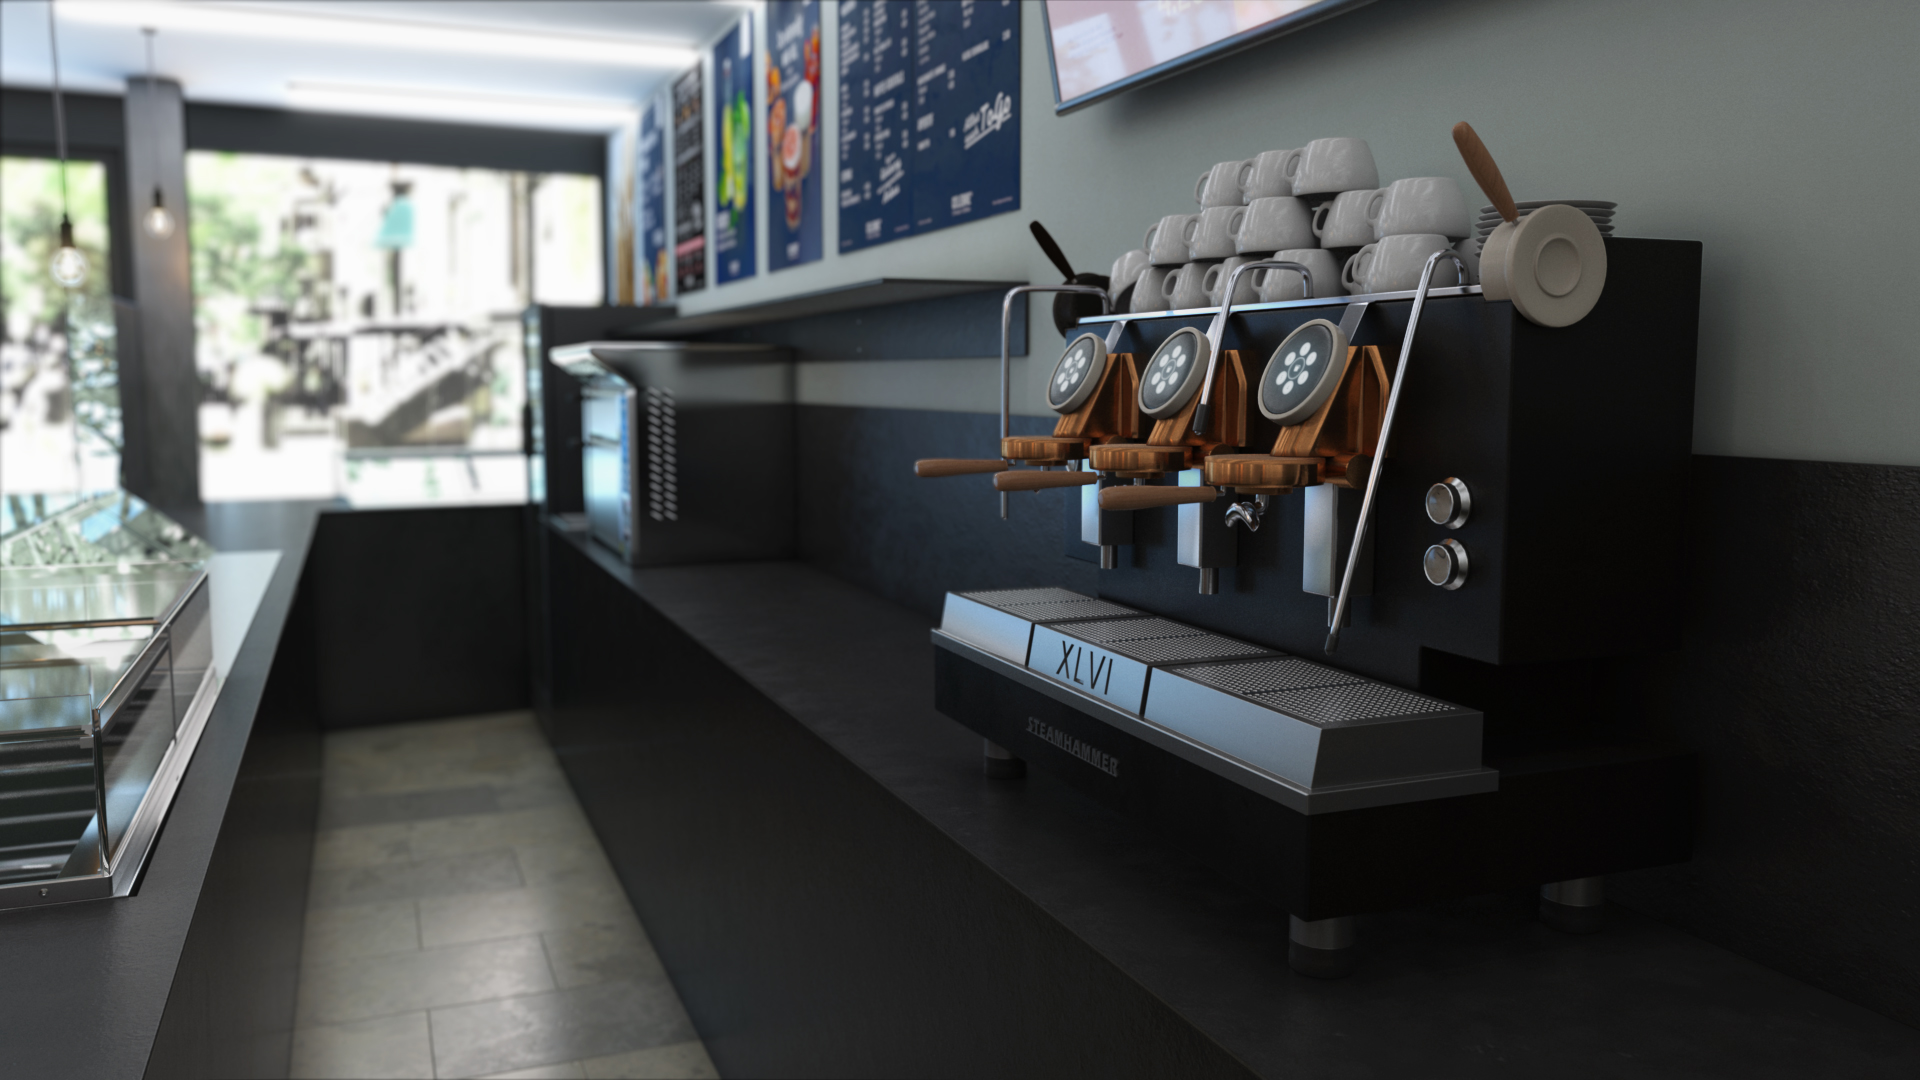 3D generiertes Bild einer Siebträgermaschine in einer Cafebar